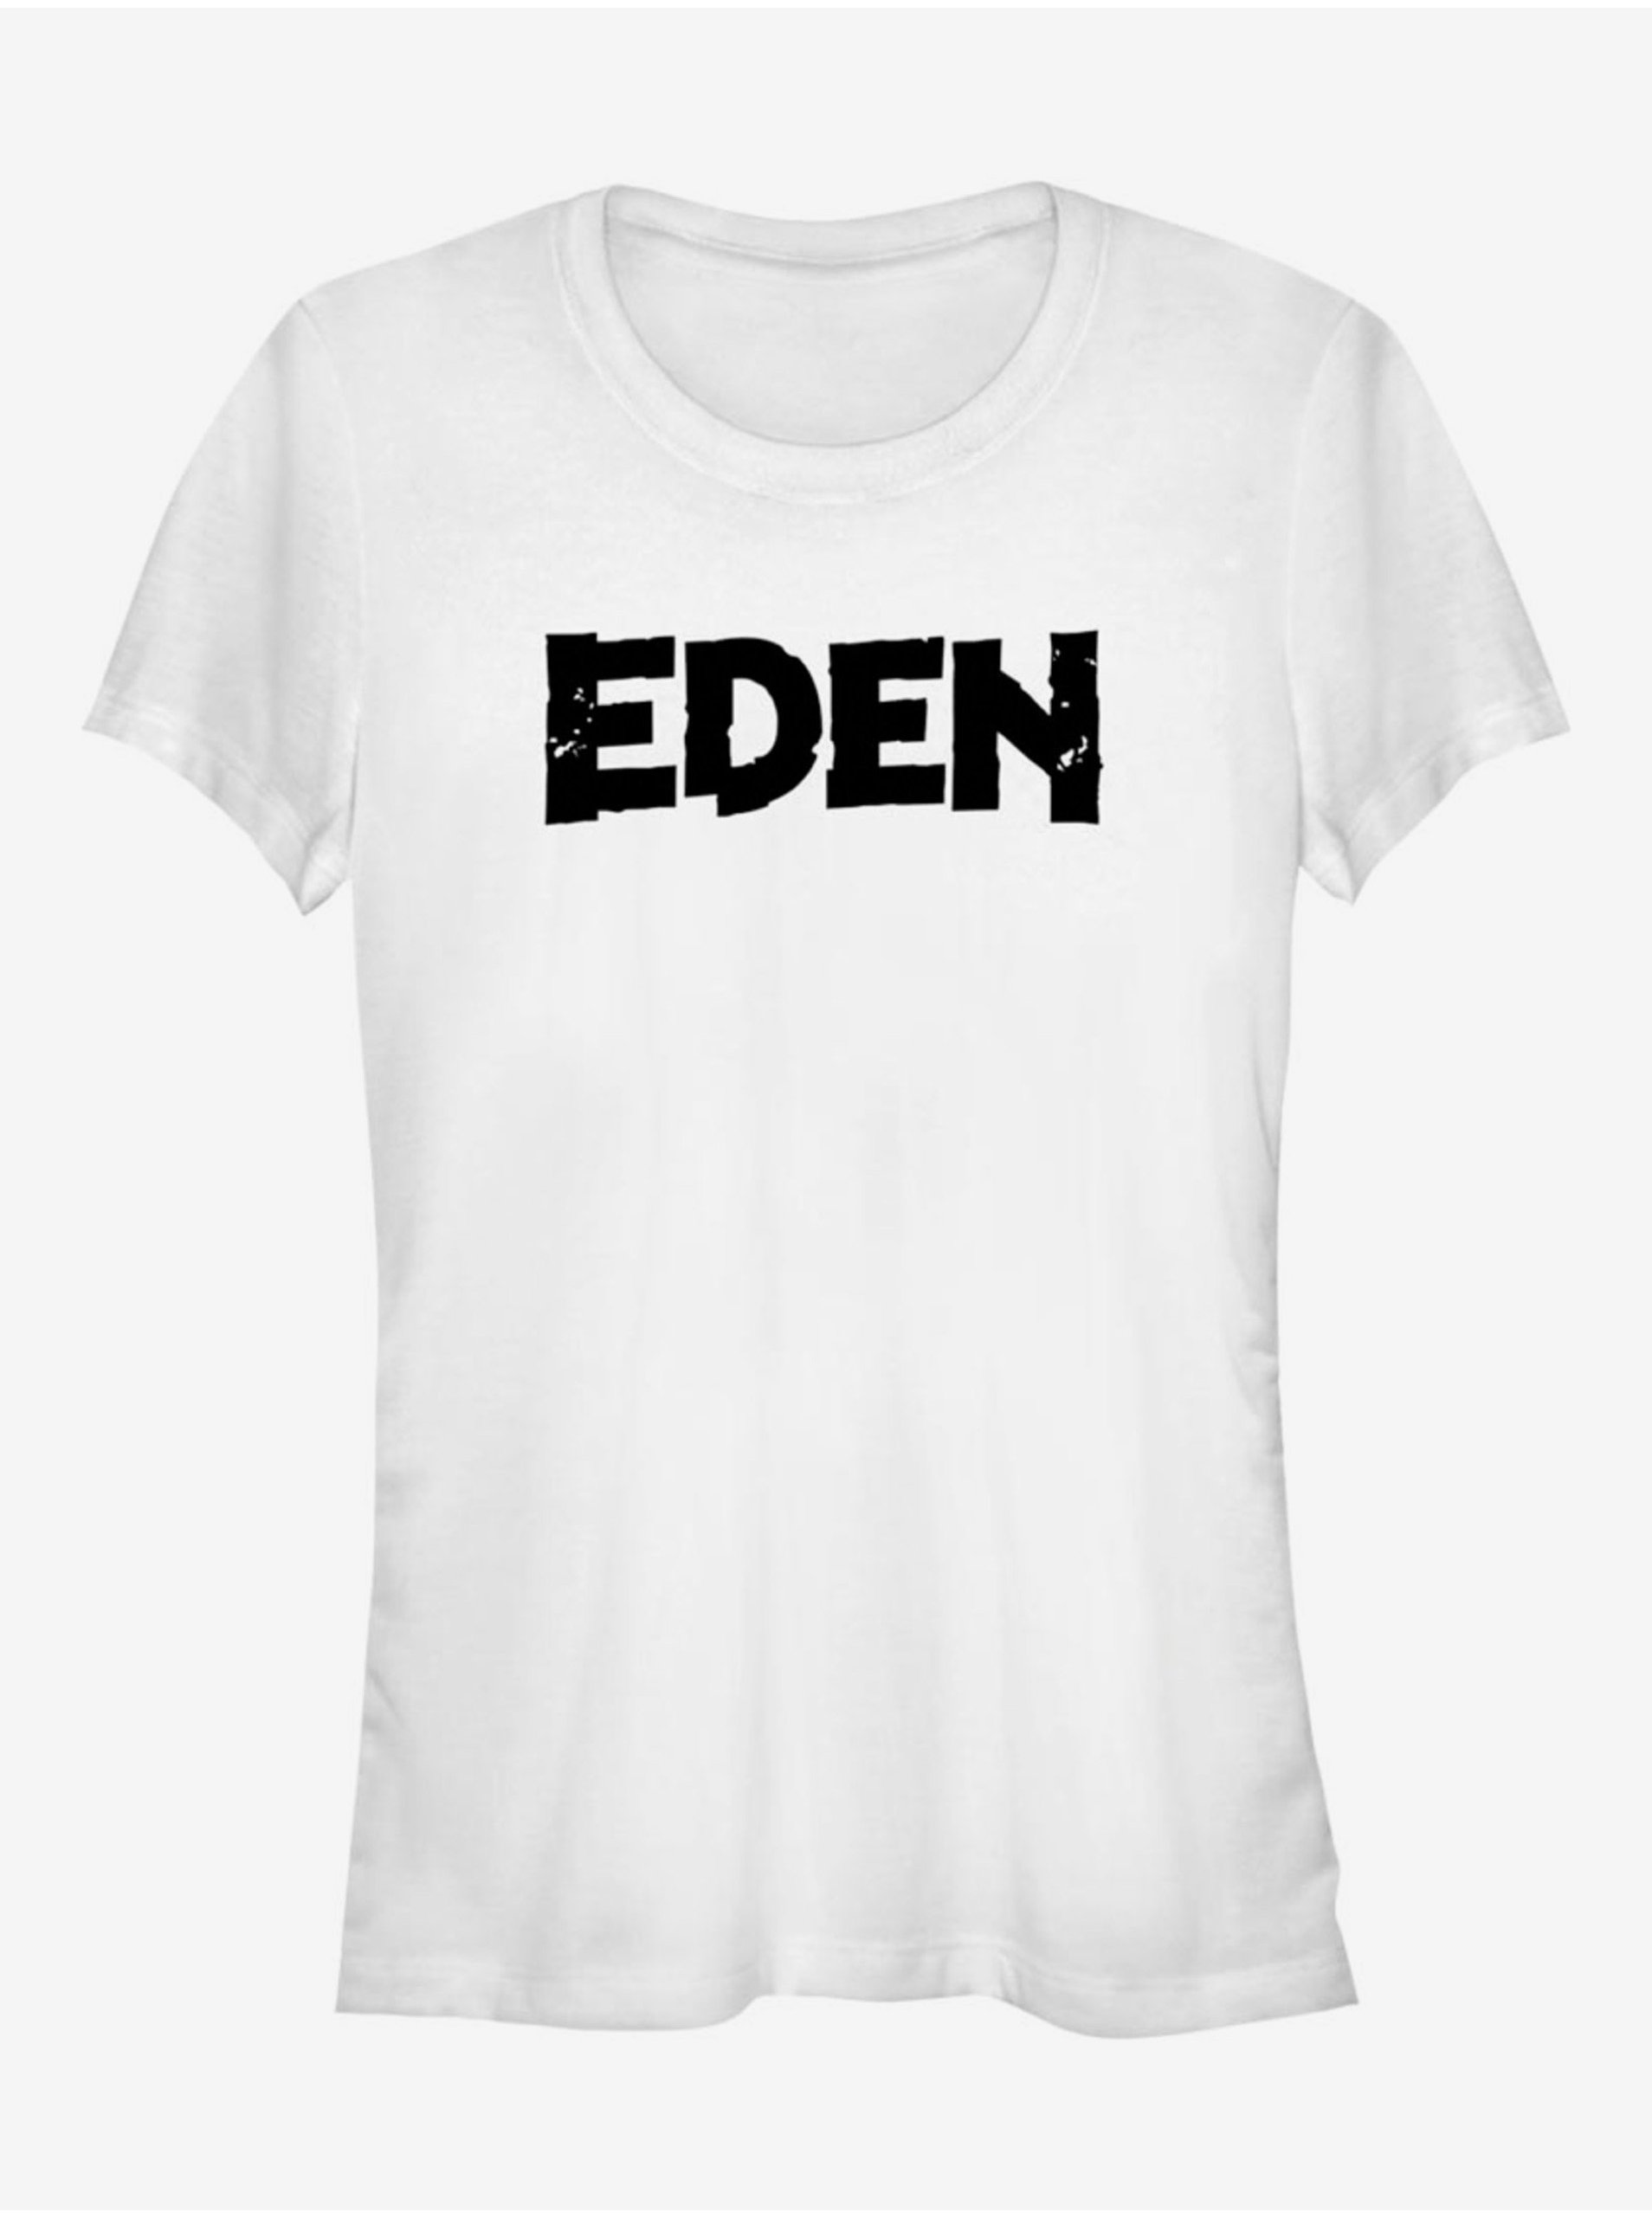 Lacno Biele dámske tričko Netflix Eden Logo